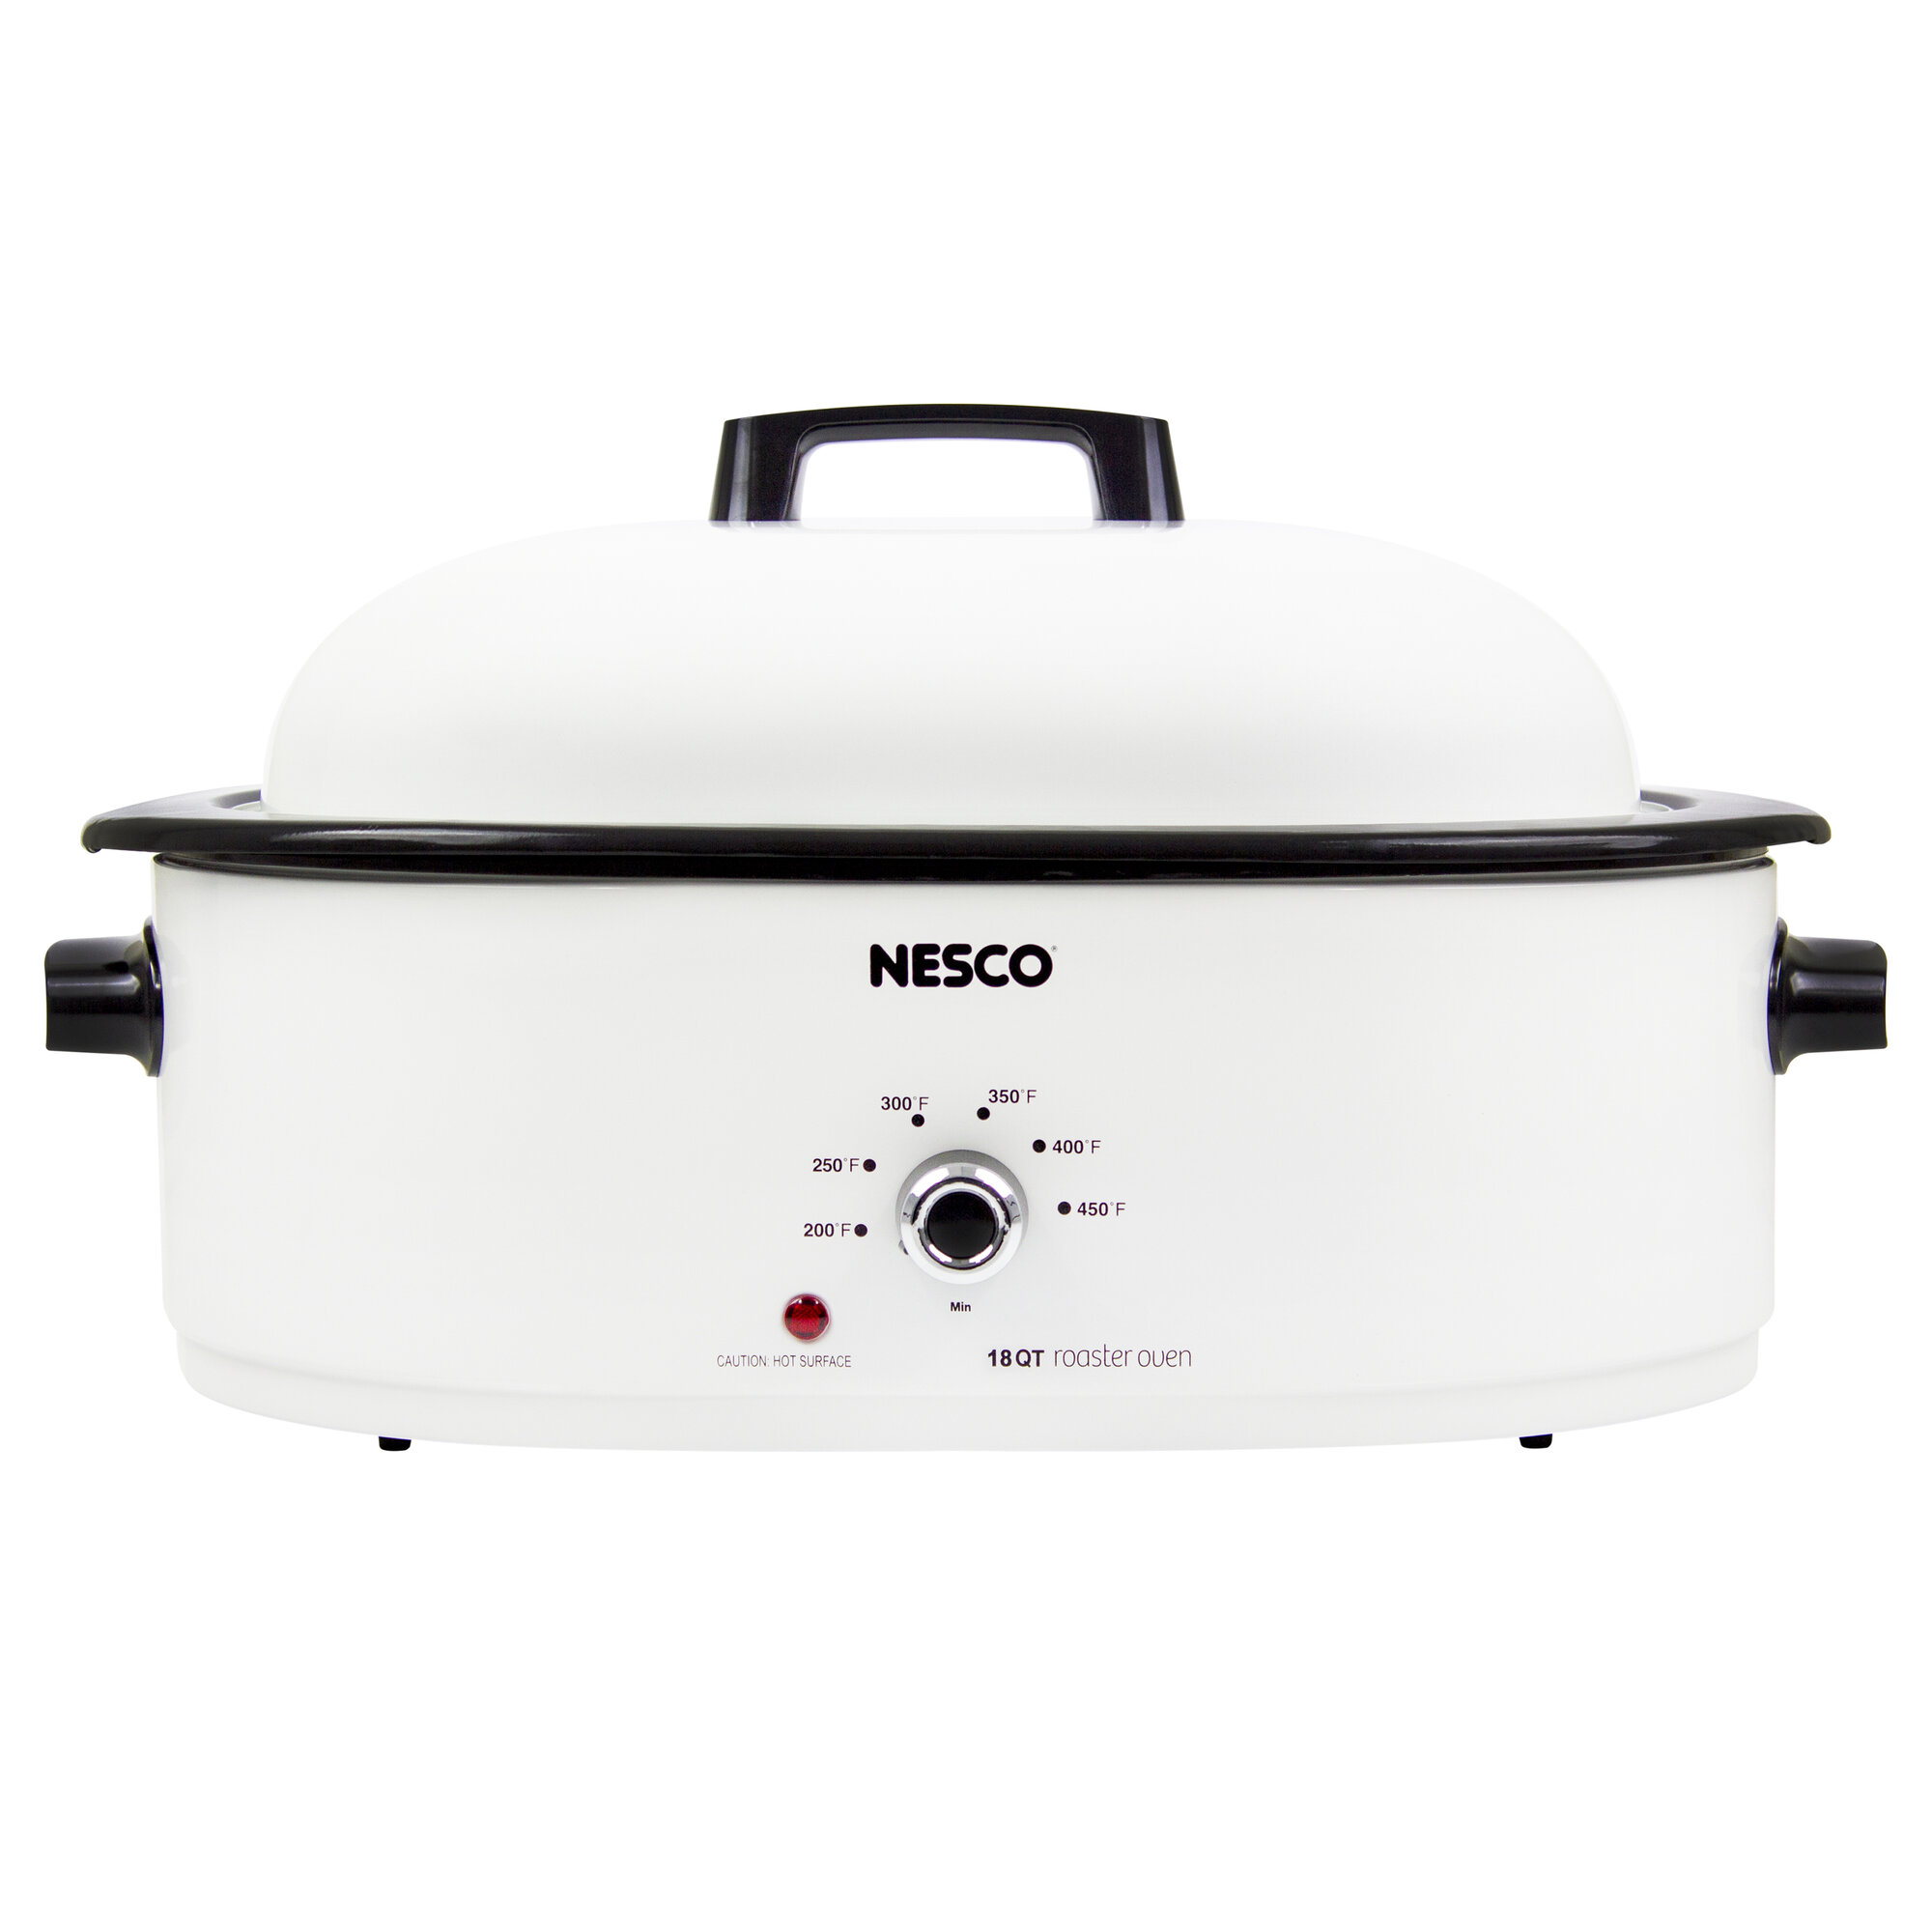 Nesco Nesco 18 Qt. Roaster Oven 78262011591 | eBay Nesco 18 Quart Roaster Oven Manual